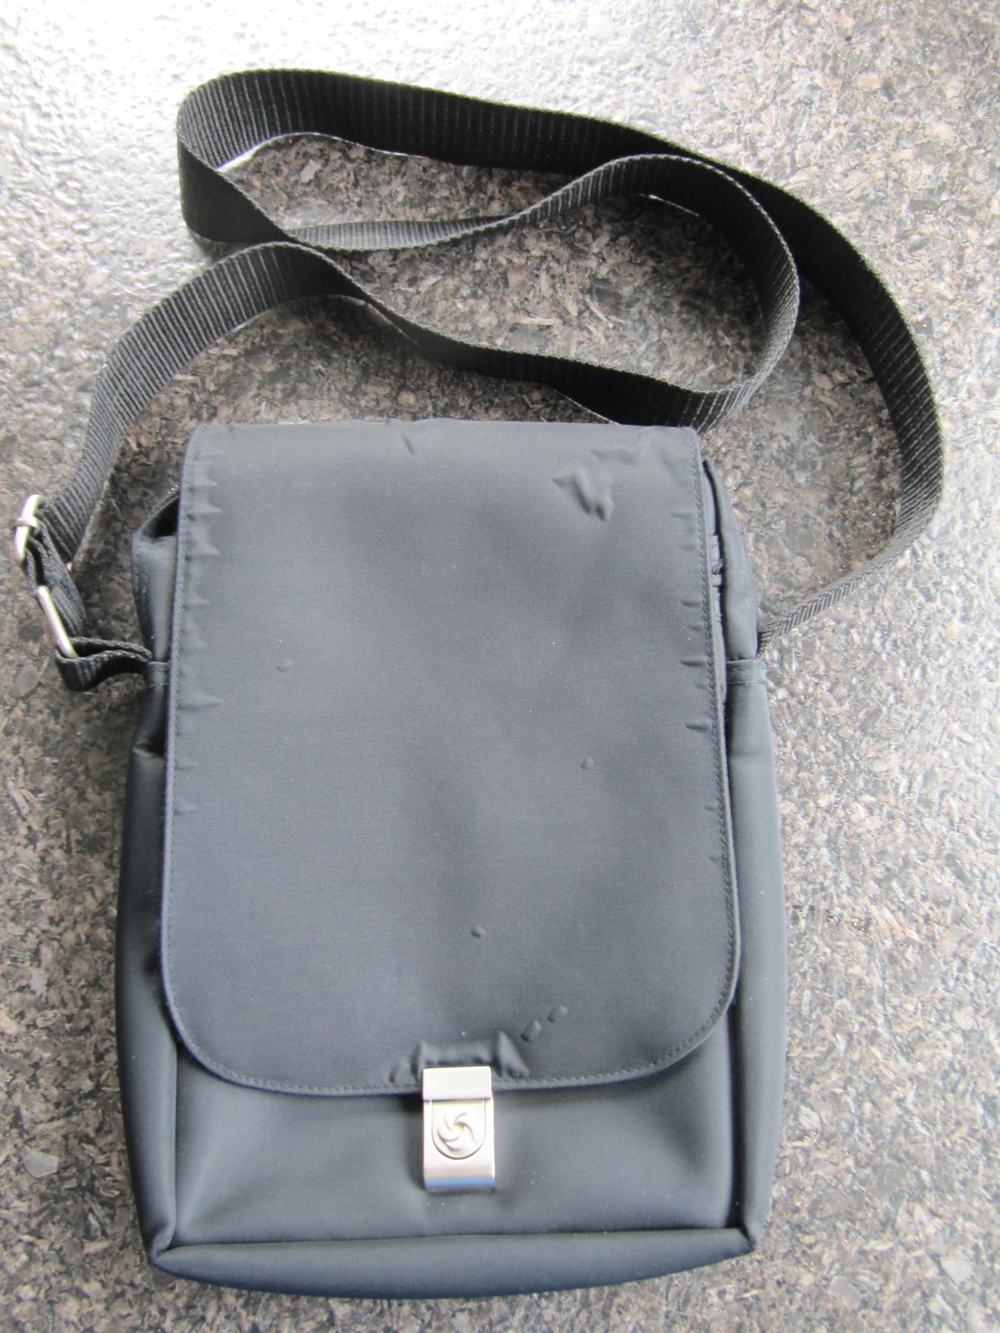 Samsonite Tasche / Umhängetasche, schwarz, diverse Fächer, Abmessungen ~ 28x20x4 cm